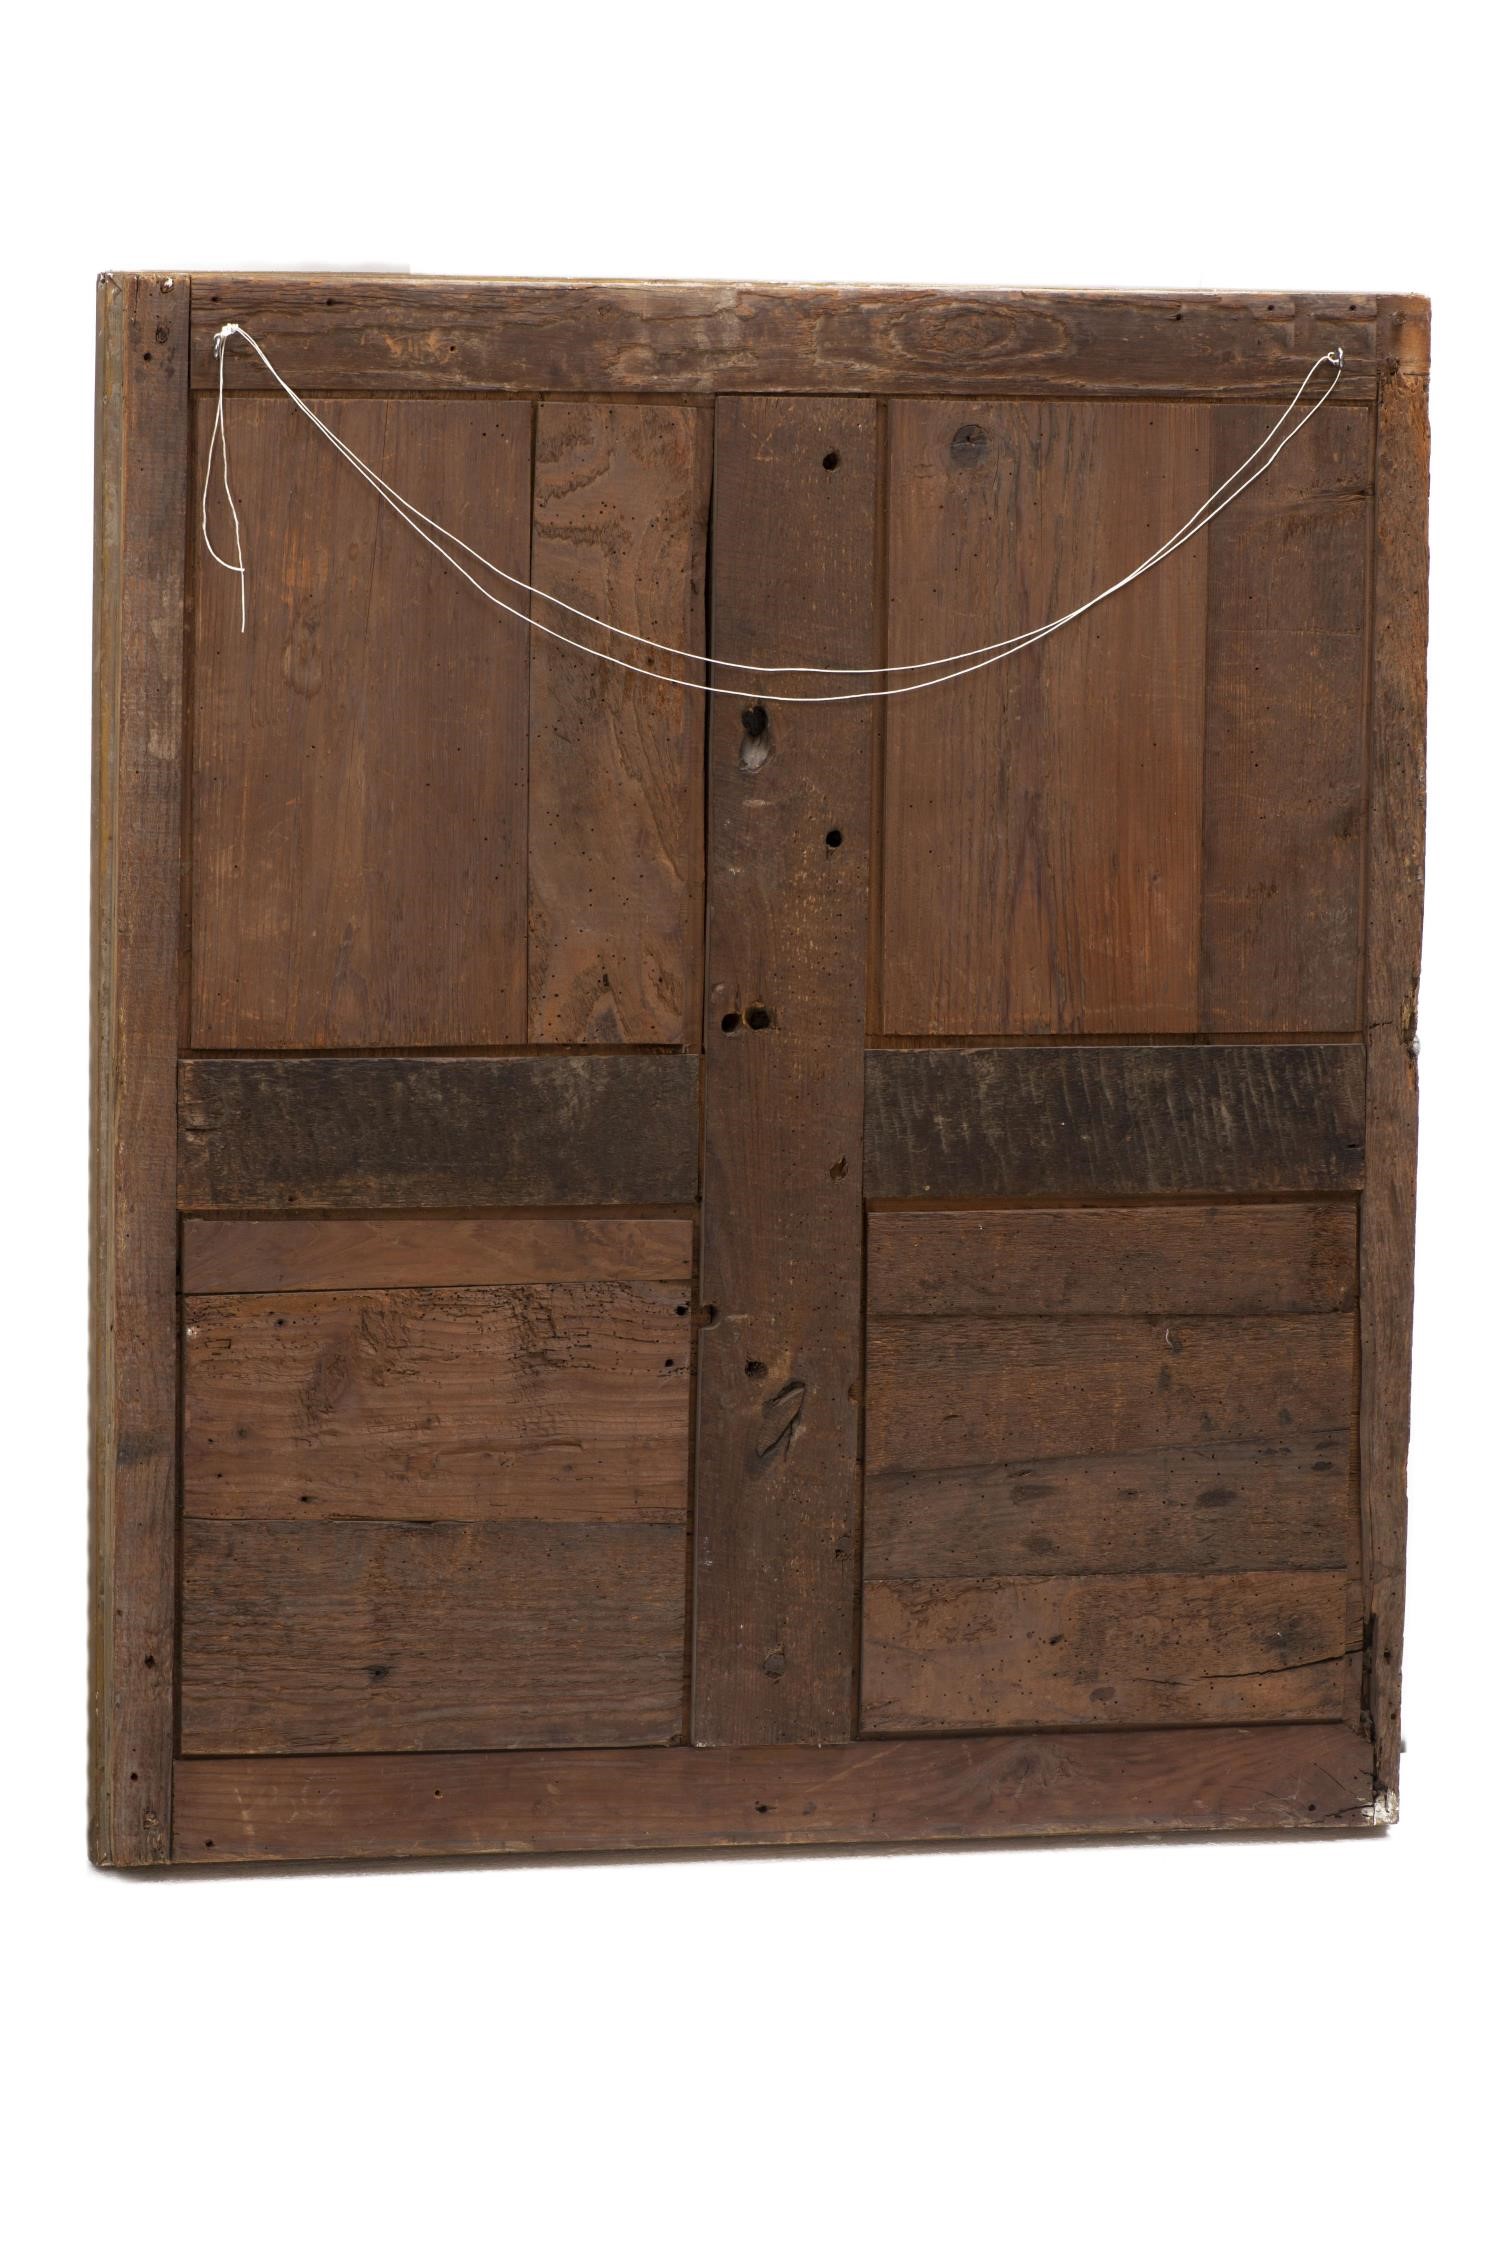 Miroir rectangulaire à cadre en bois et stuc doré d'époque Nap. III H. 97x84 cm - [...] - Image 4 of 4